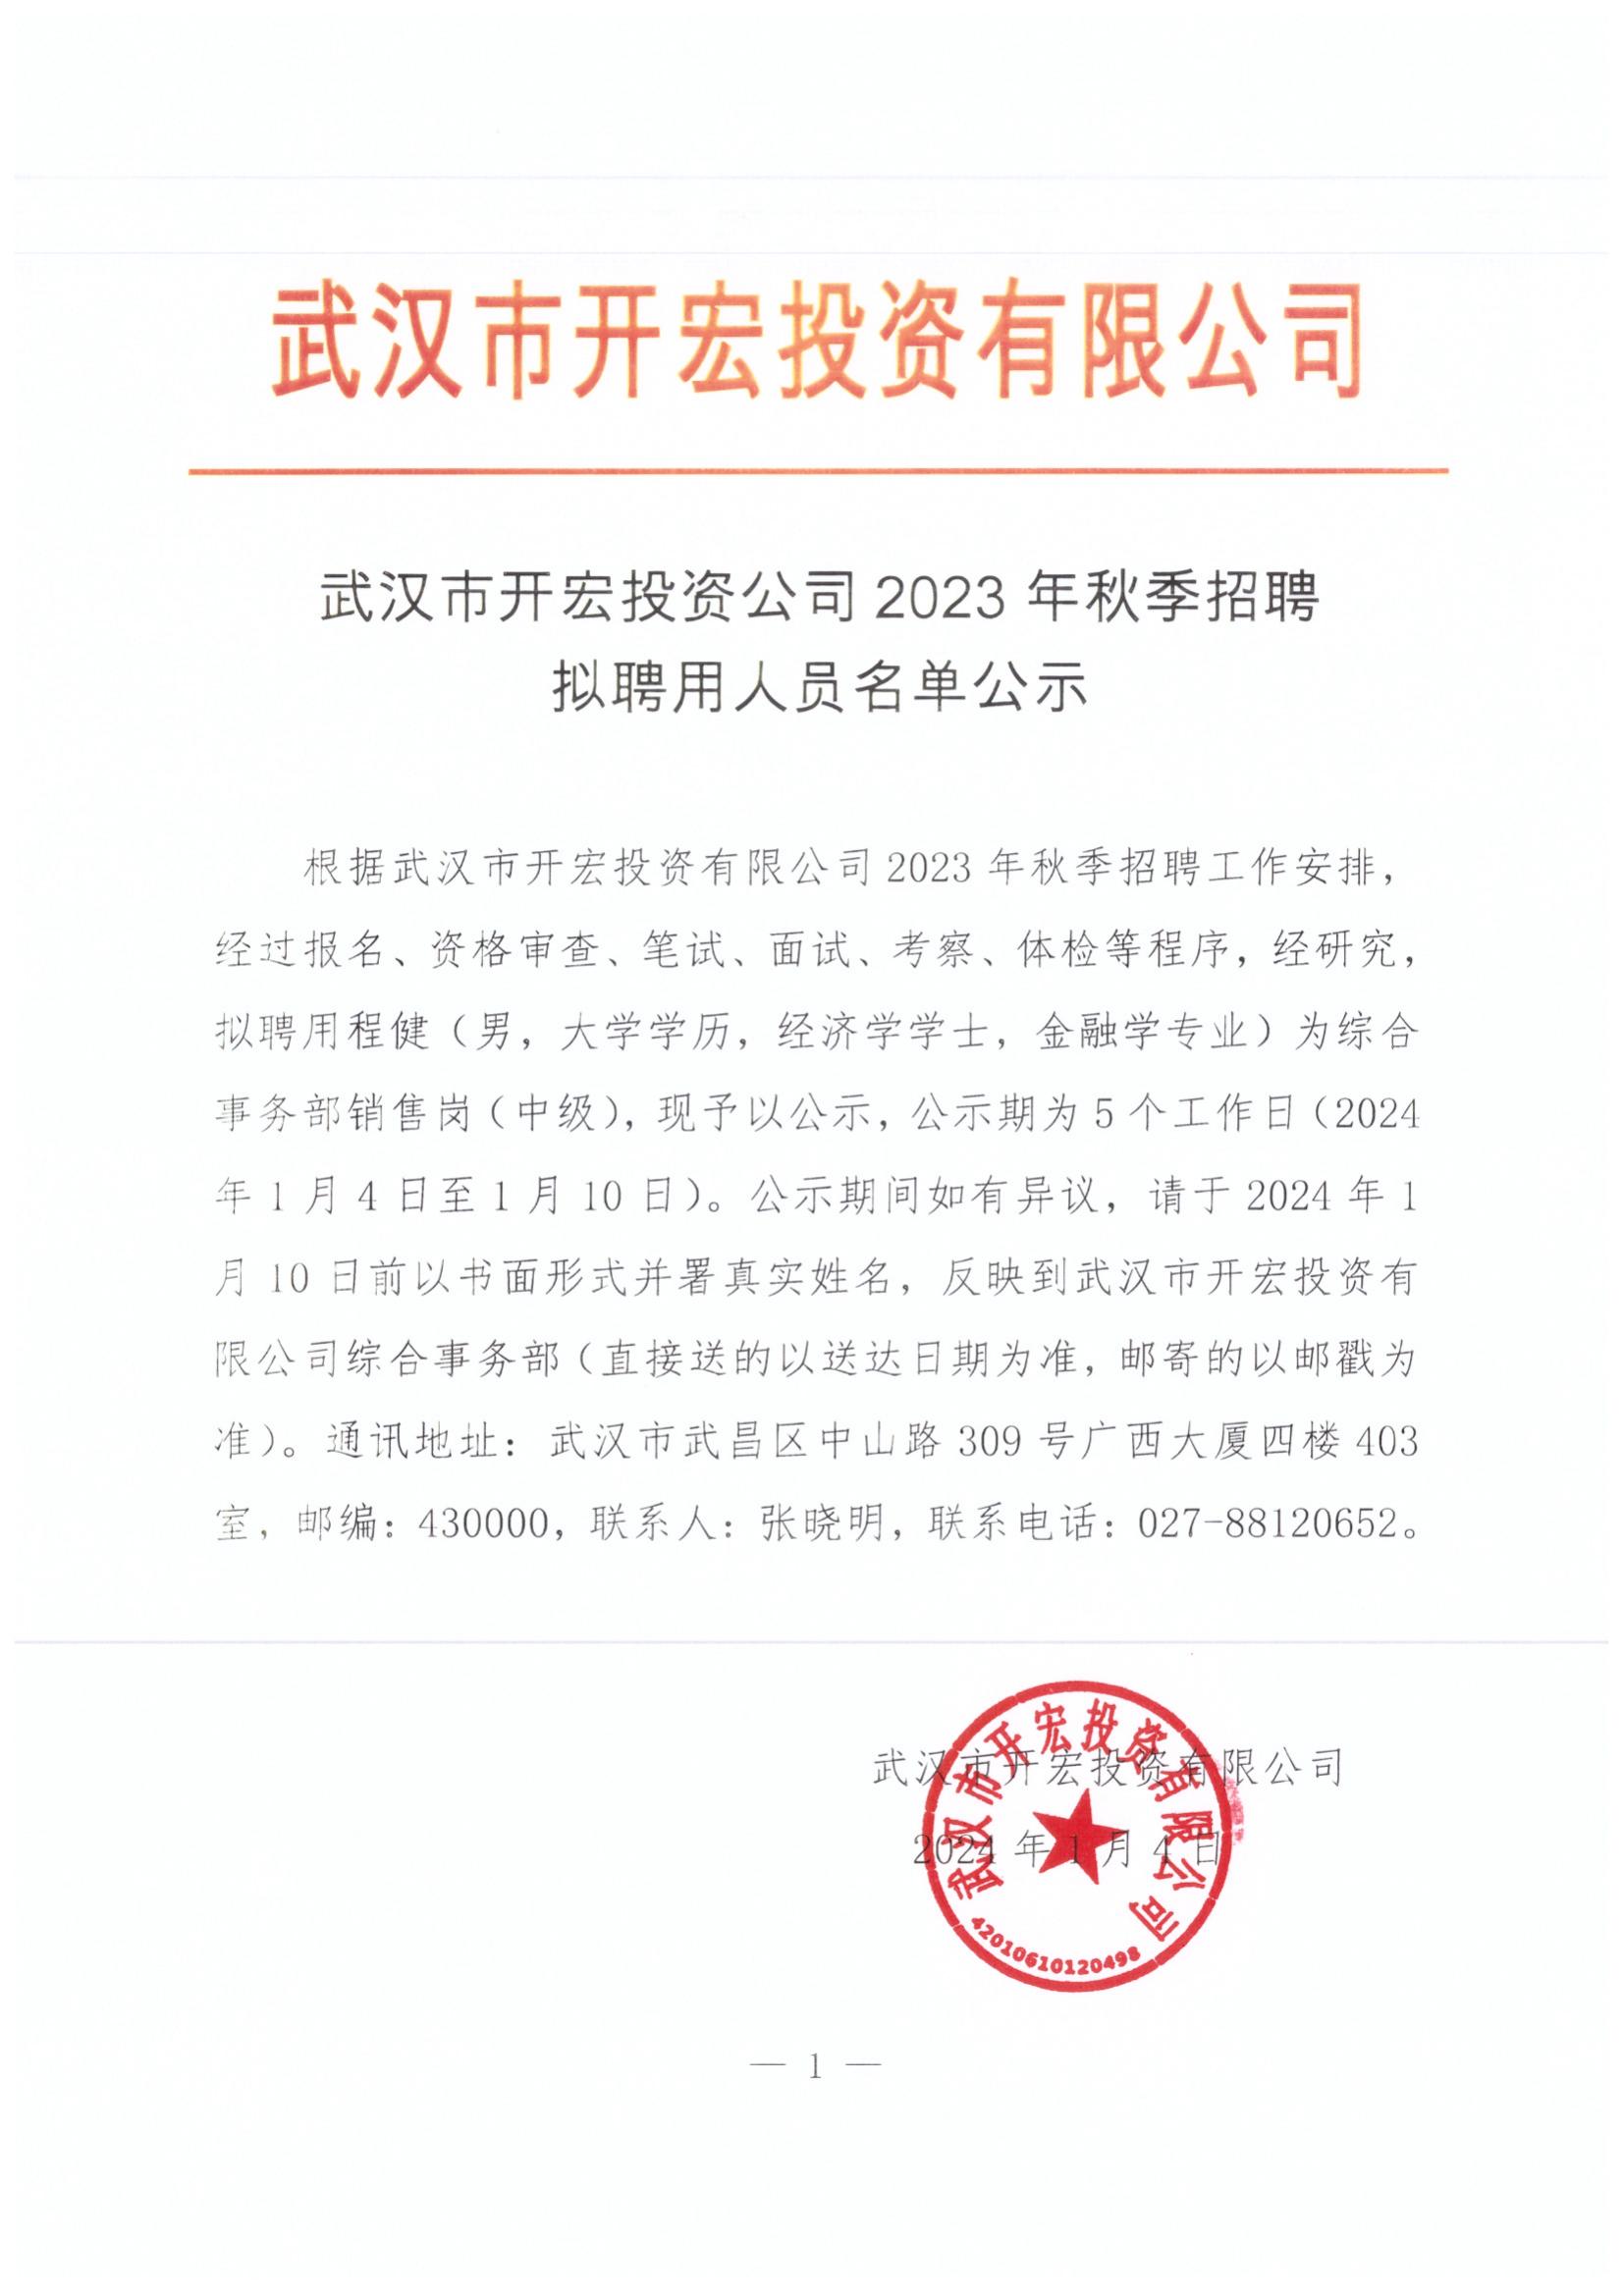 武汉开宏投资公司2023年秋季招聘拟聘用人员名单公示20240104_00.jpg